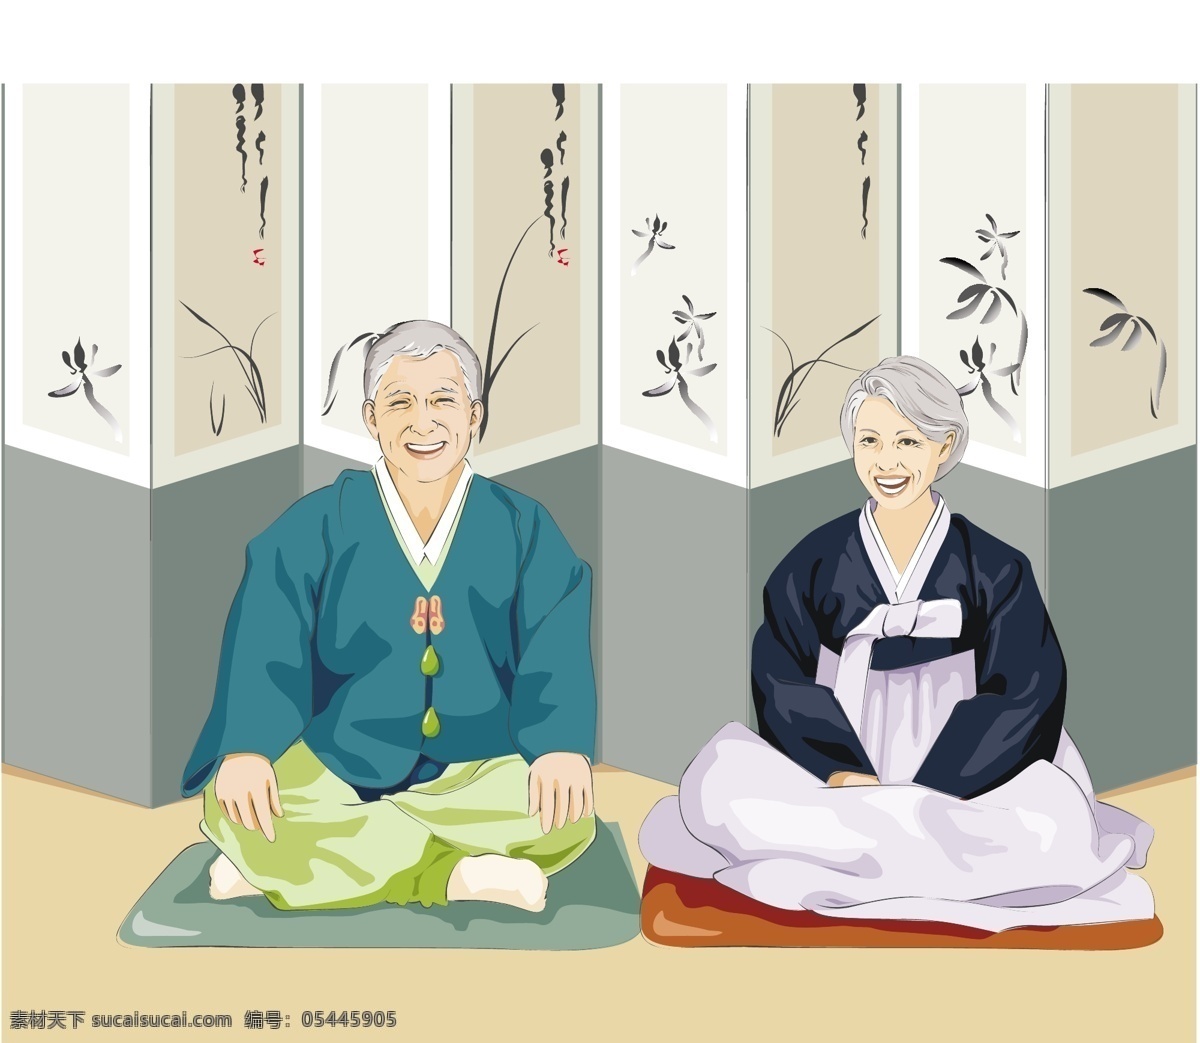 幸福的晚年 盘腿 坐在 屏风 前 坐垫 韩国 传统 服饰 韩式服装 白发苍苍 老年人 夫妻 恩爱 幸福 晚年 爷爷 奶奶 矢量 夕阳红 老人 白色